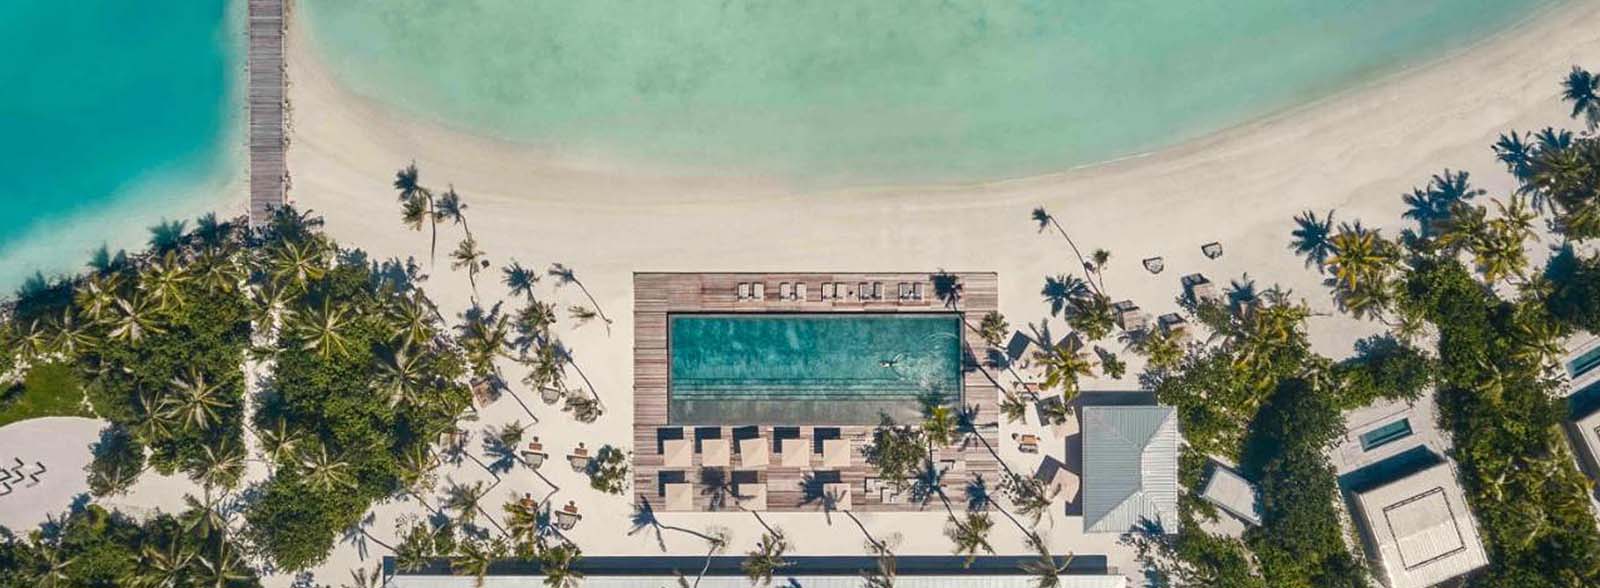 Patina Maldives Pool and Beach